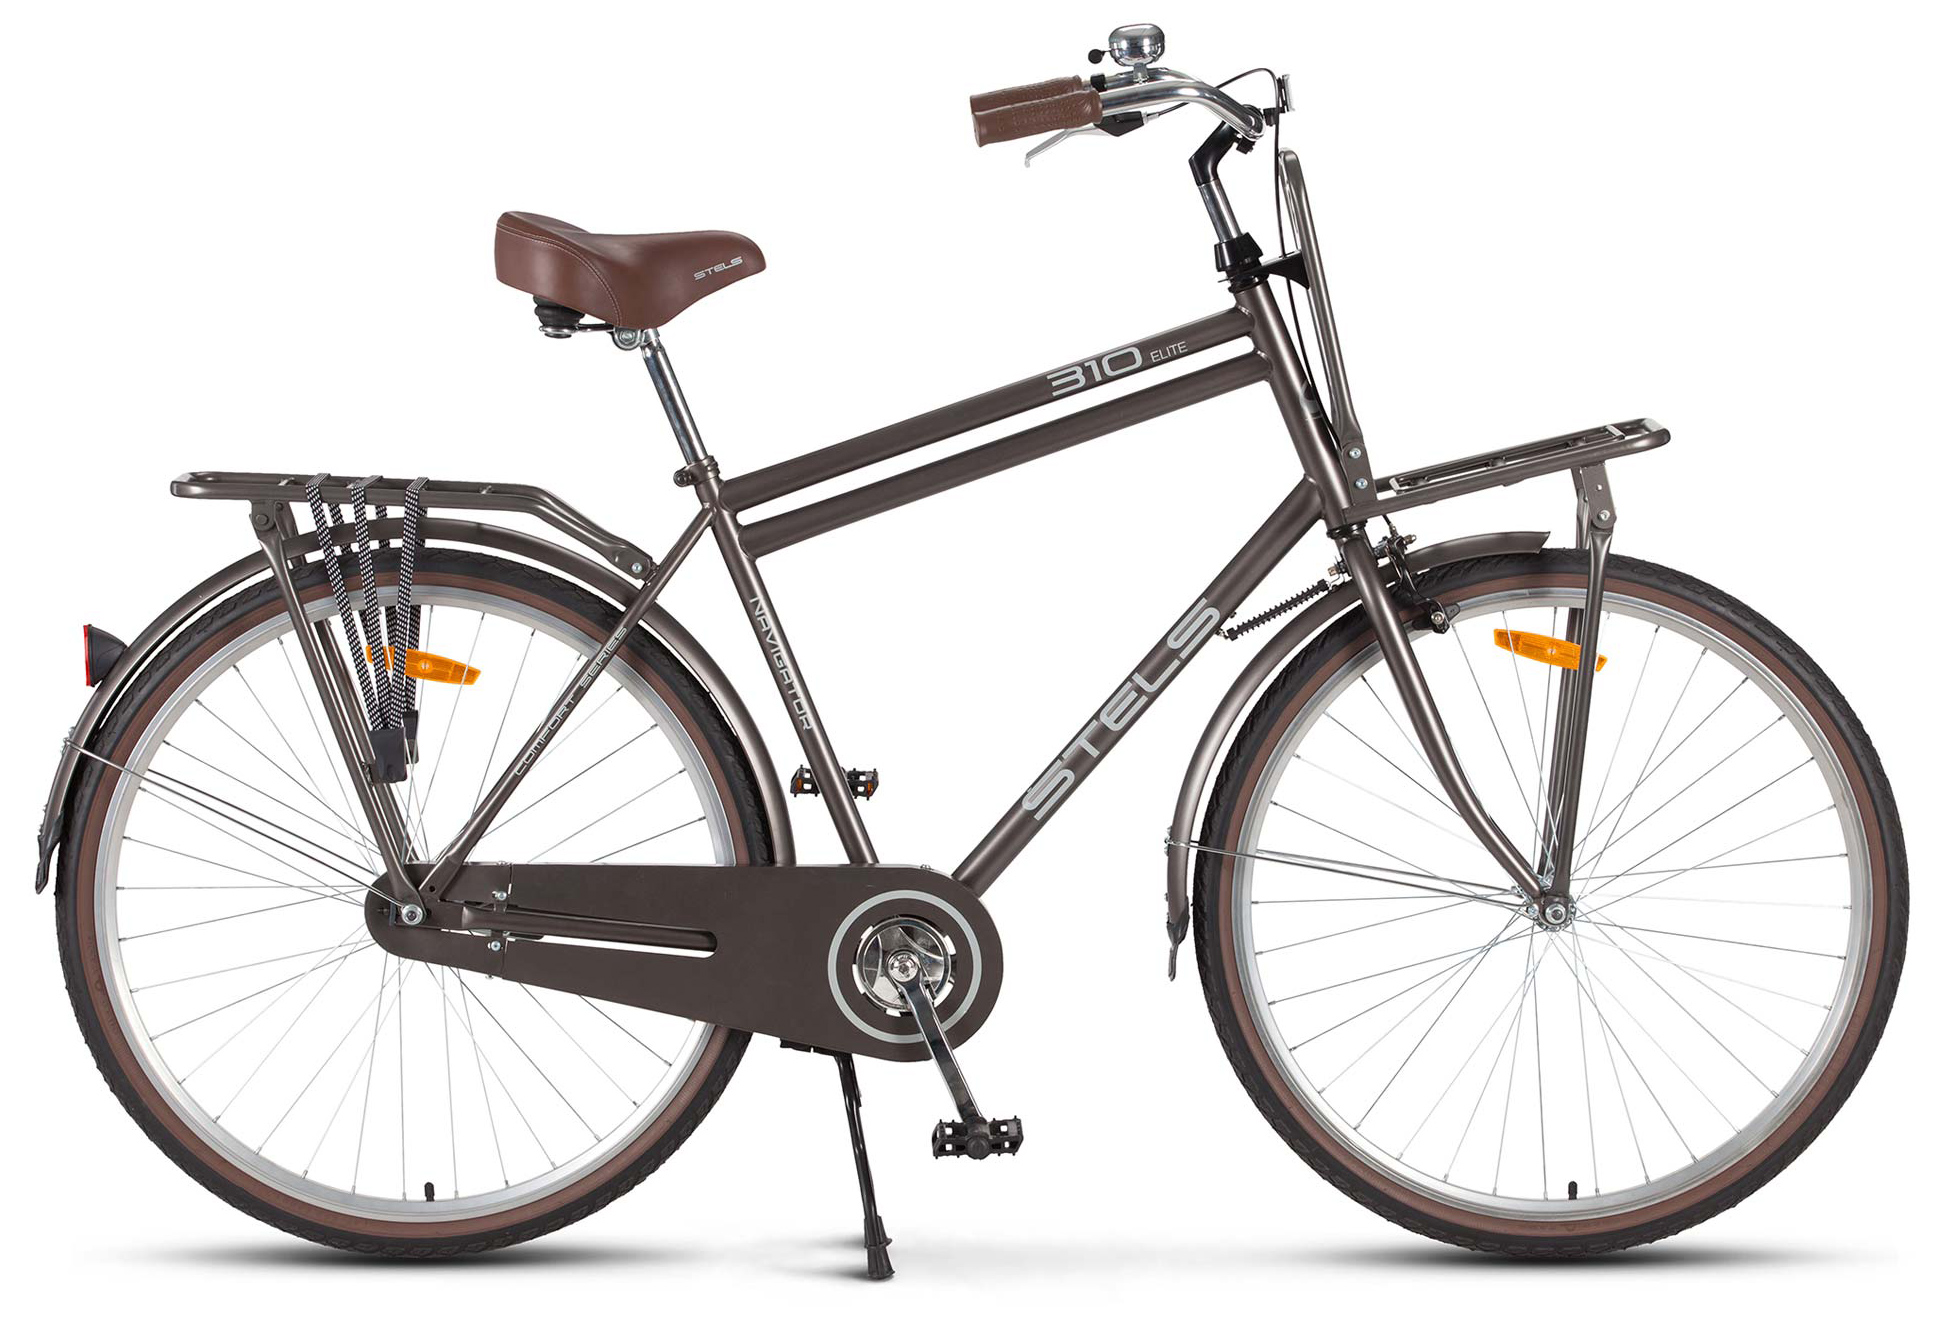  Отзывы о Городском велосипеде Stels Navigator 310 Gent 28" (V020) 2019